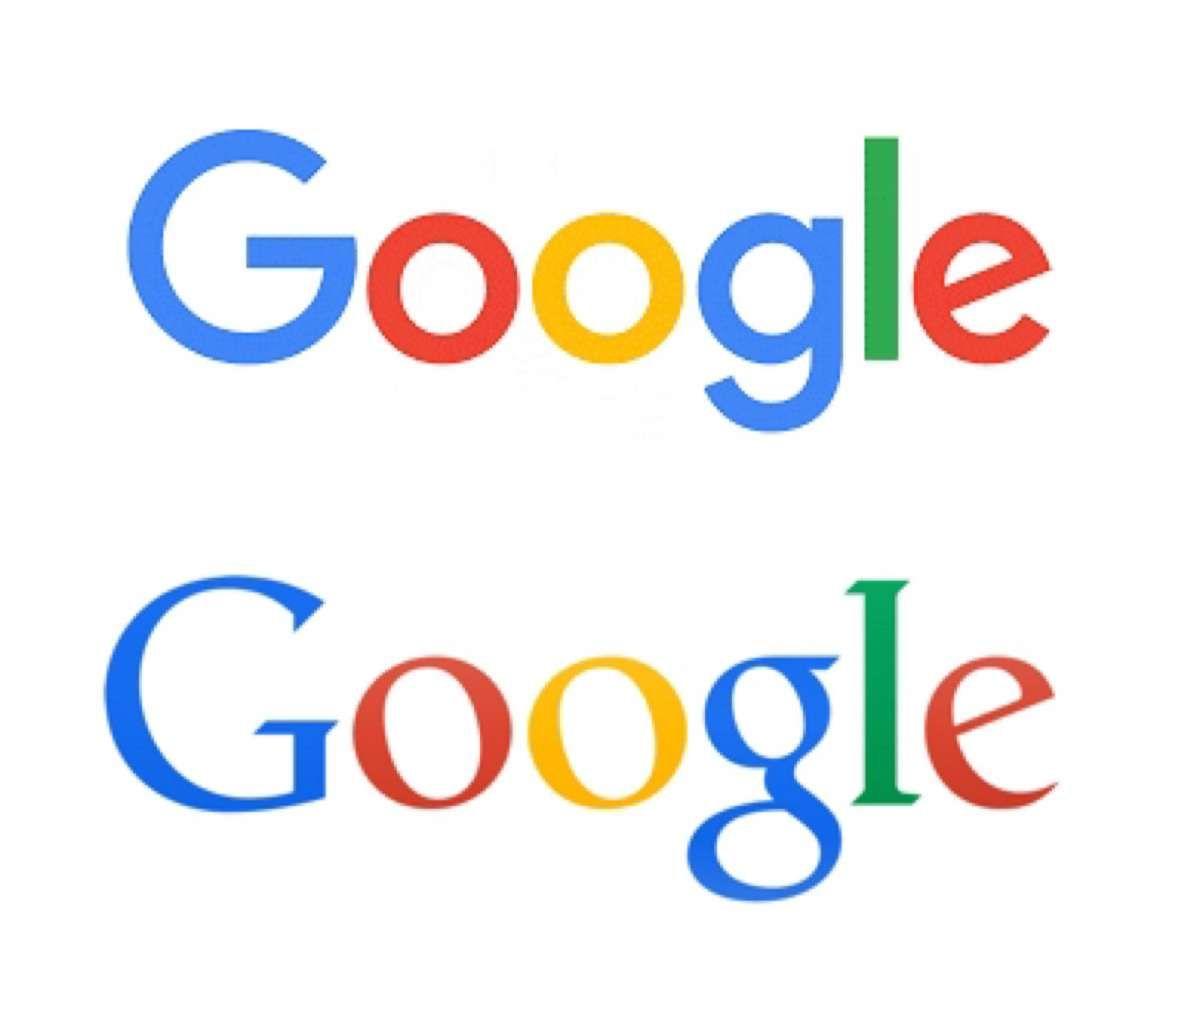 Old Logo - Google - New Logo vs. Old Logo